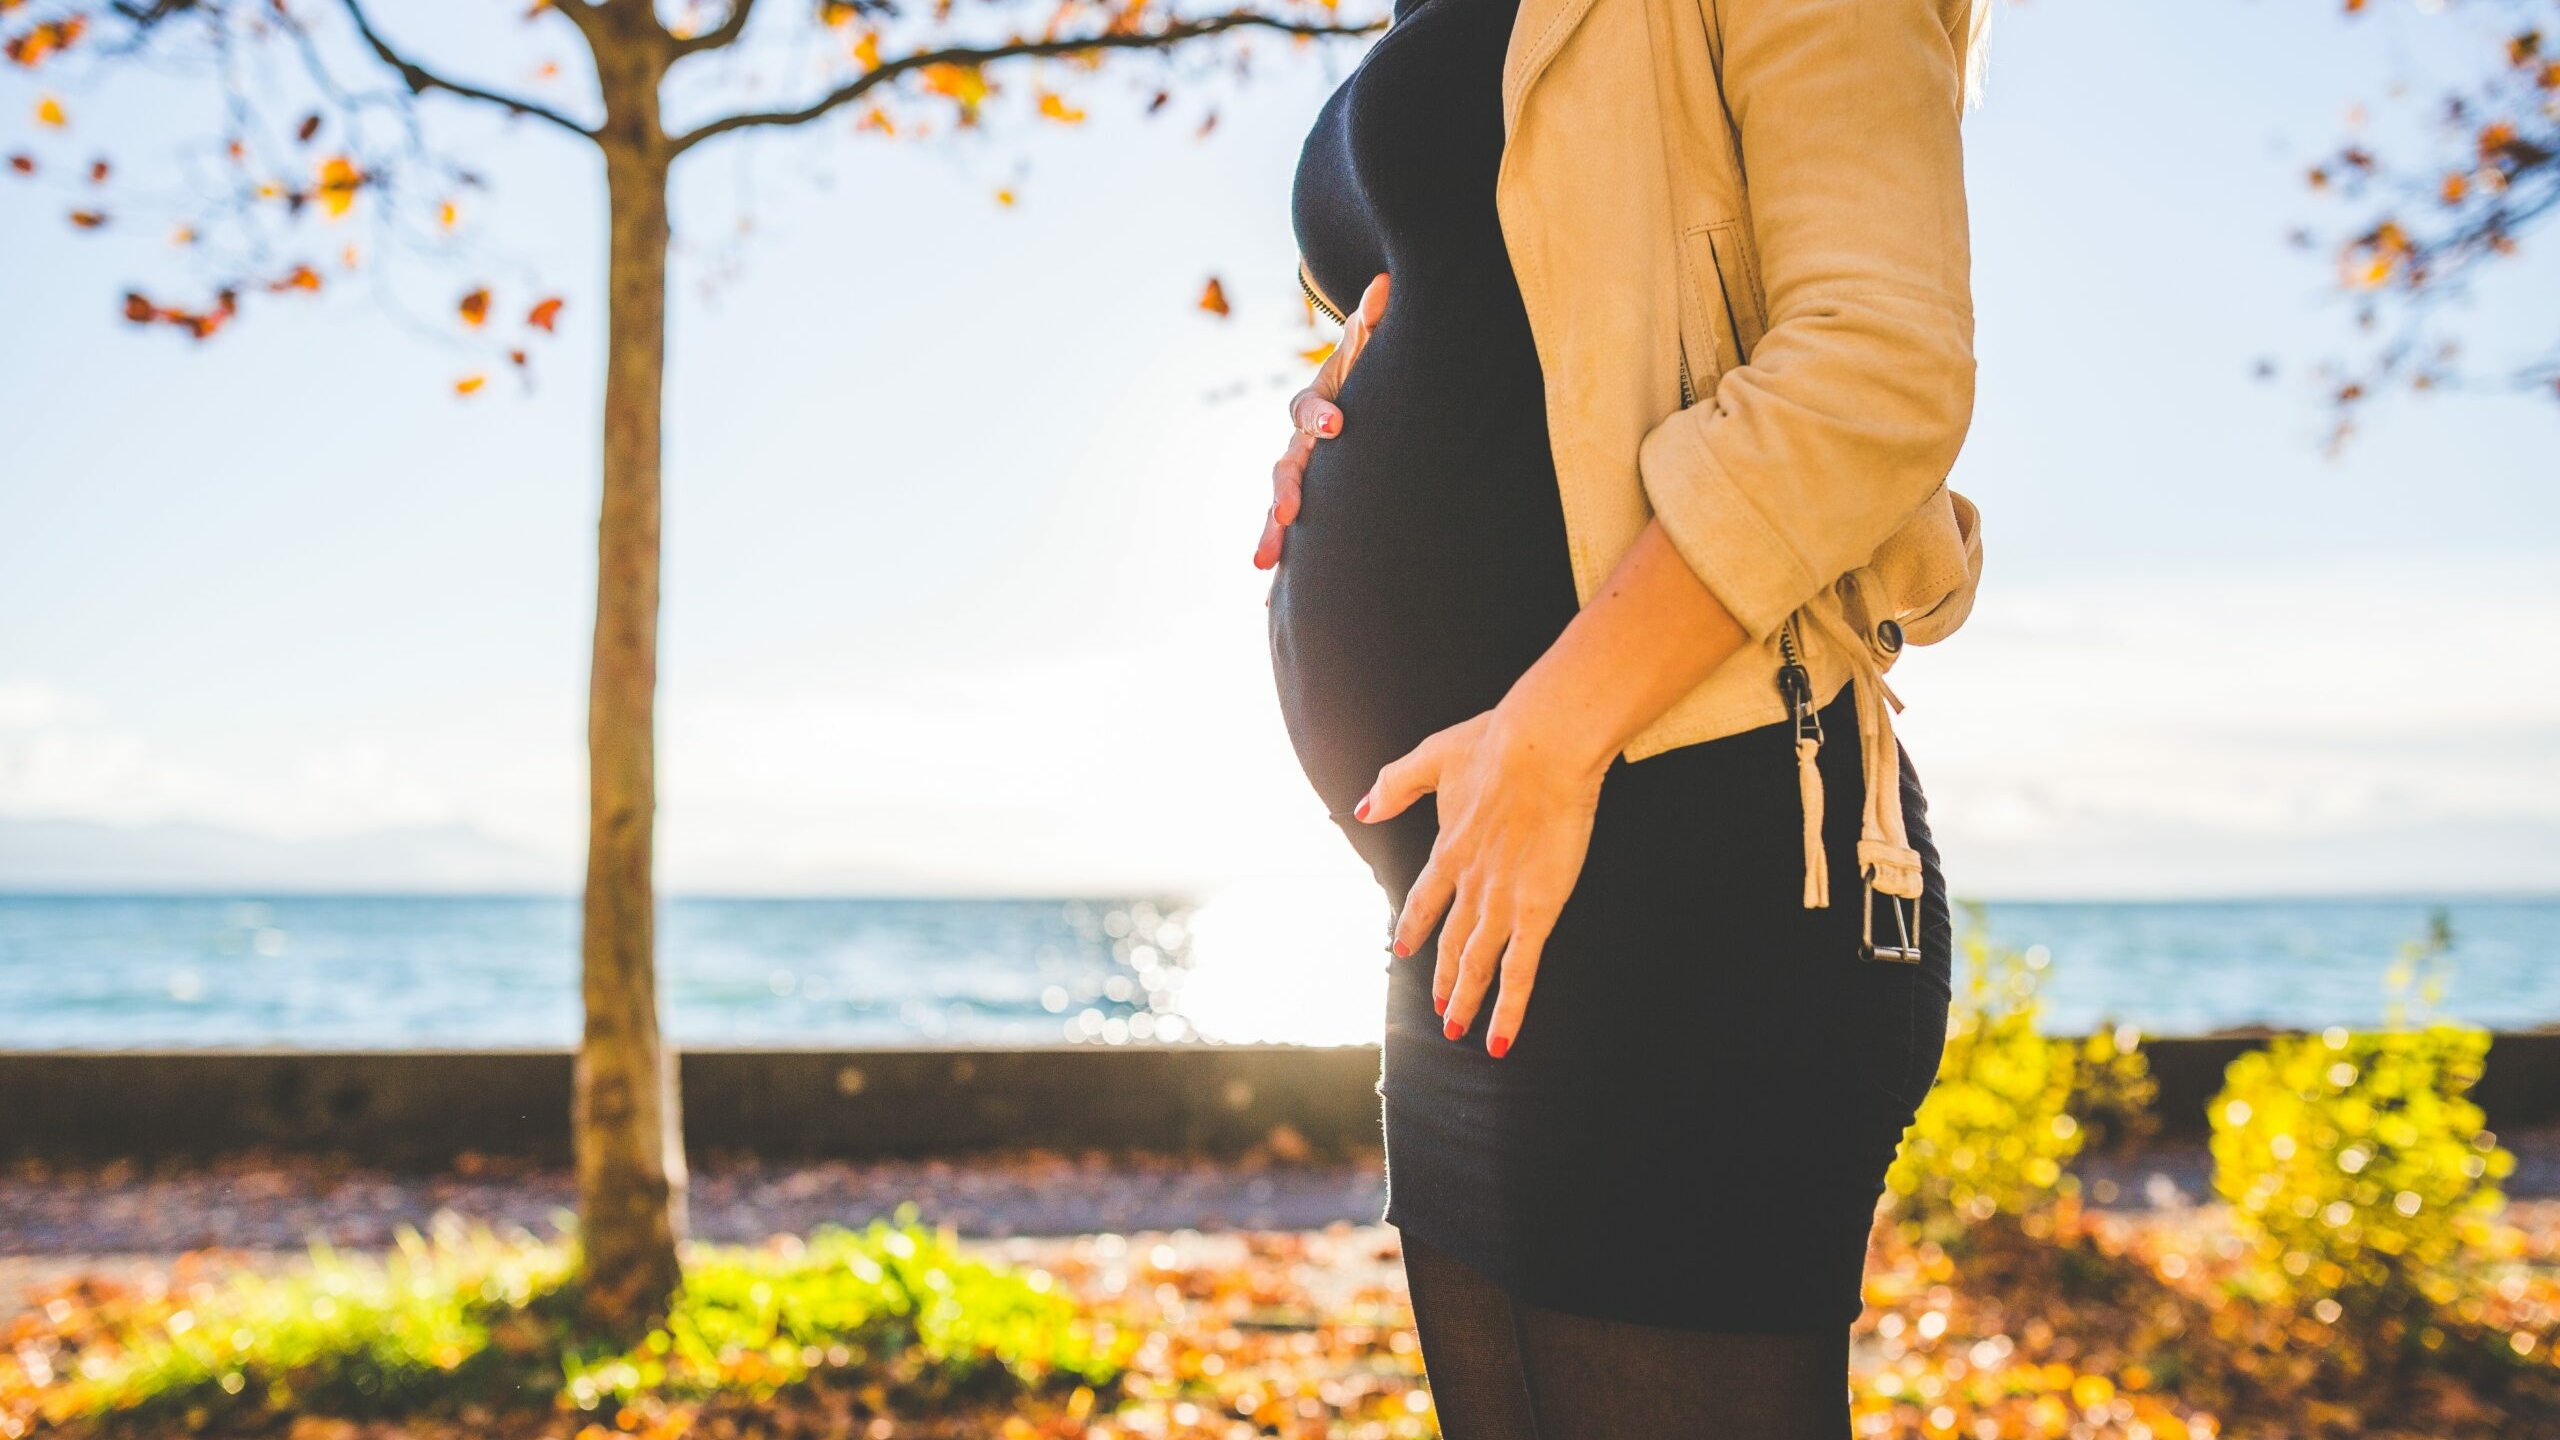 Кофе, стрижка и спорт: гинеколог из Подмосковья рассказала, что можно делать при беременности